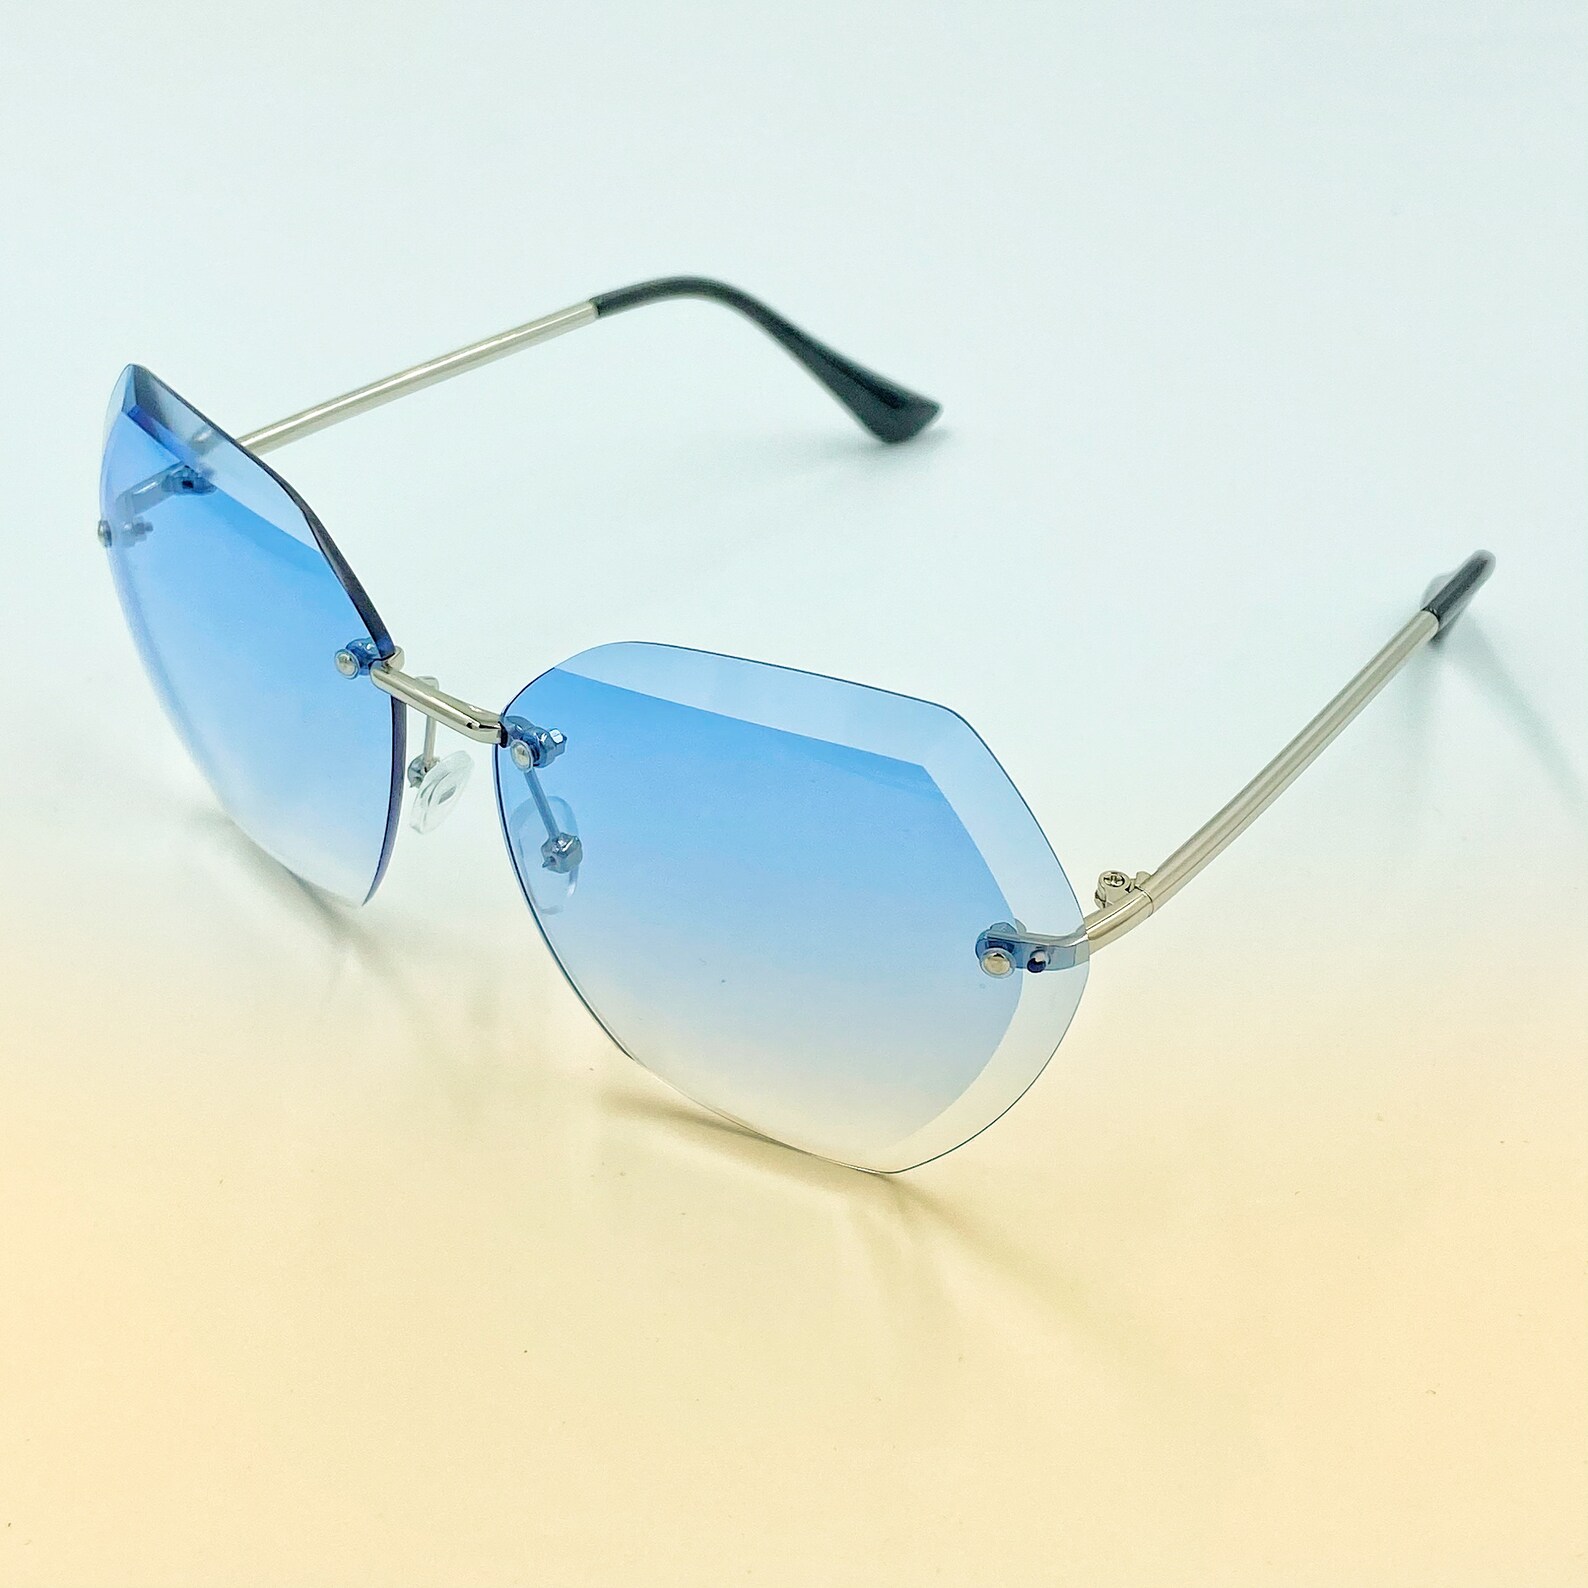 Retro frameless hexagonal sunglasses with layered blue lenses | Etsy